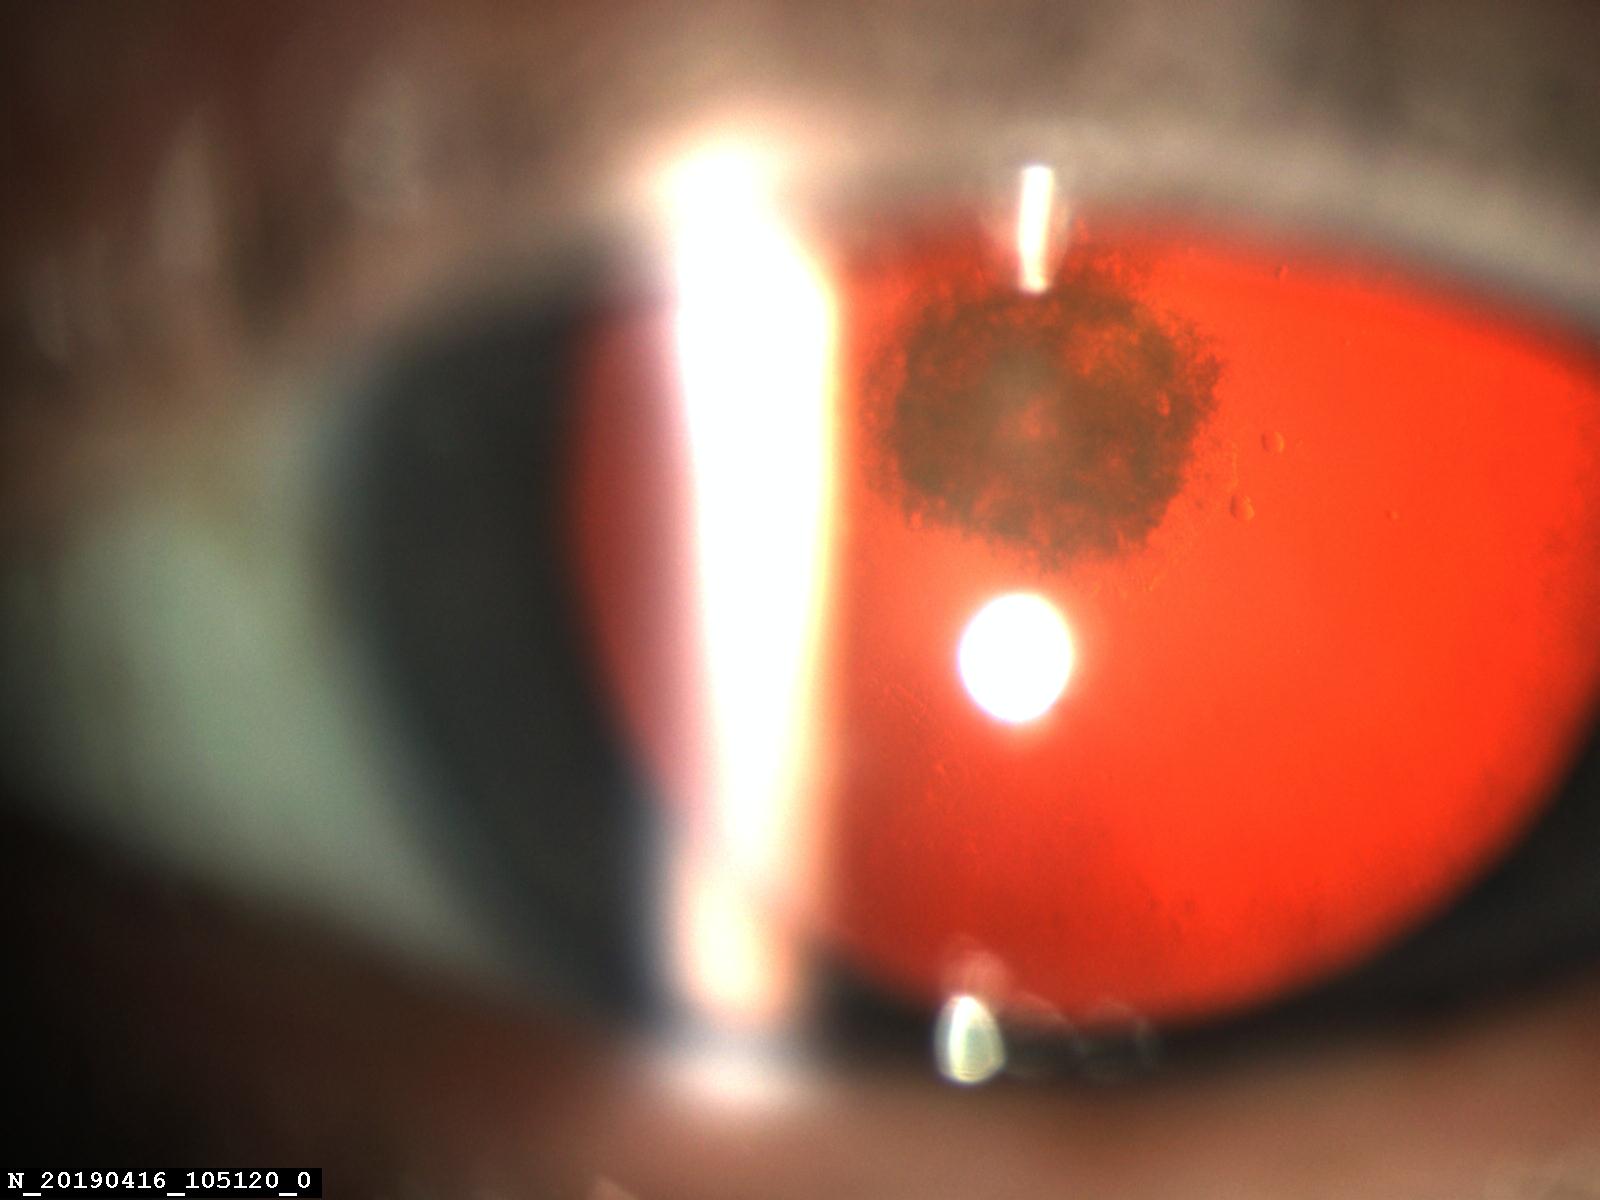 Факоэмульсификации заднеполярной катаракты